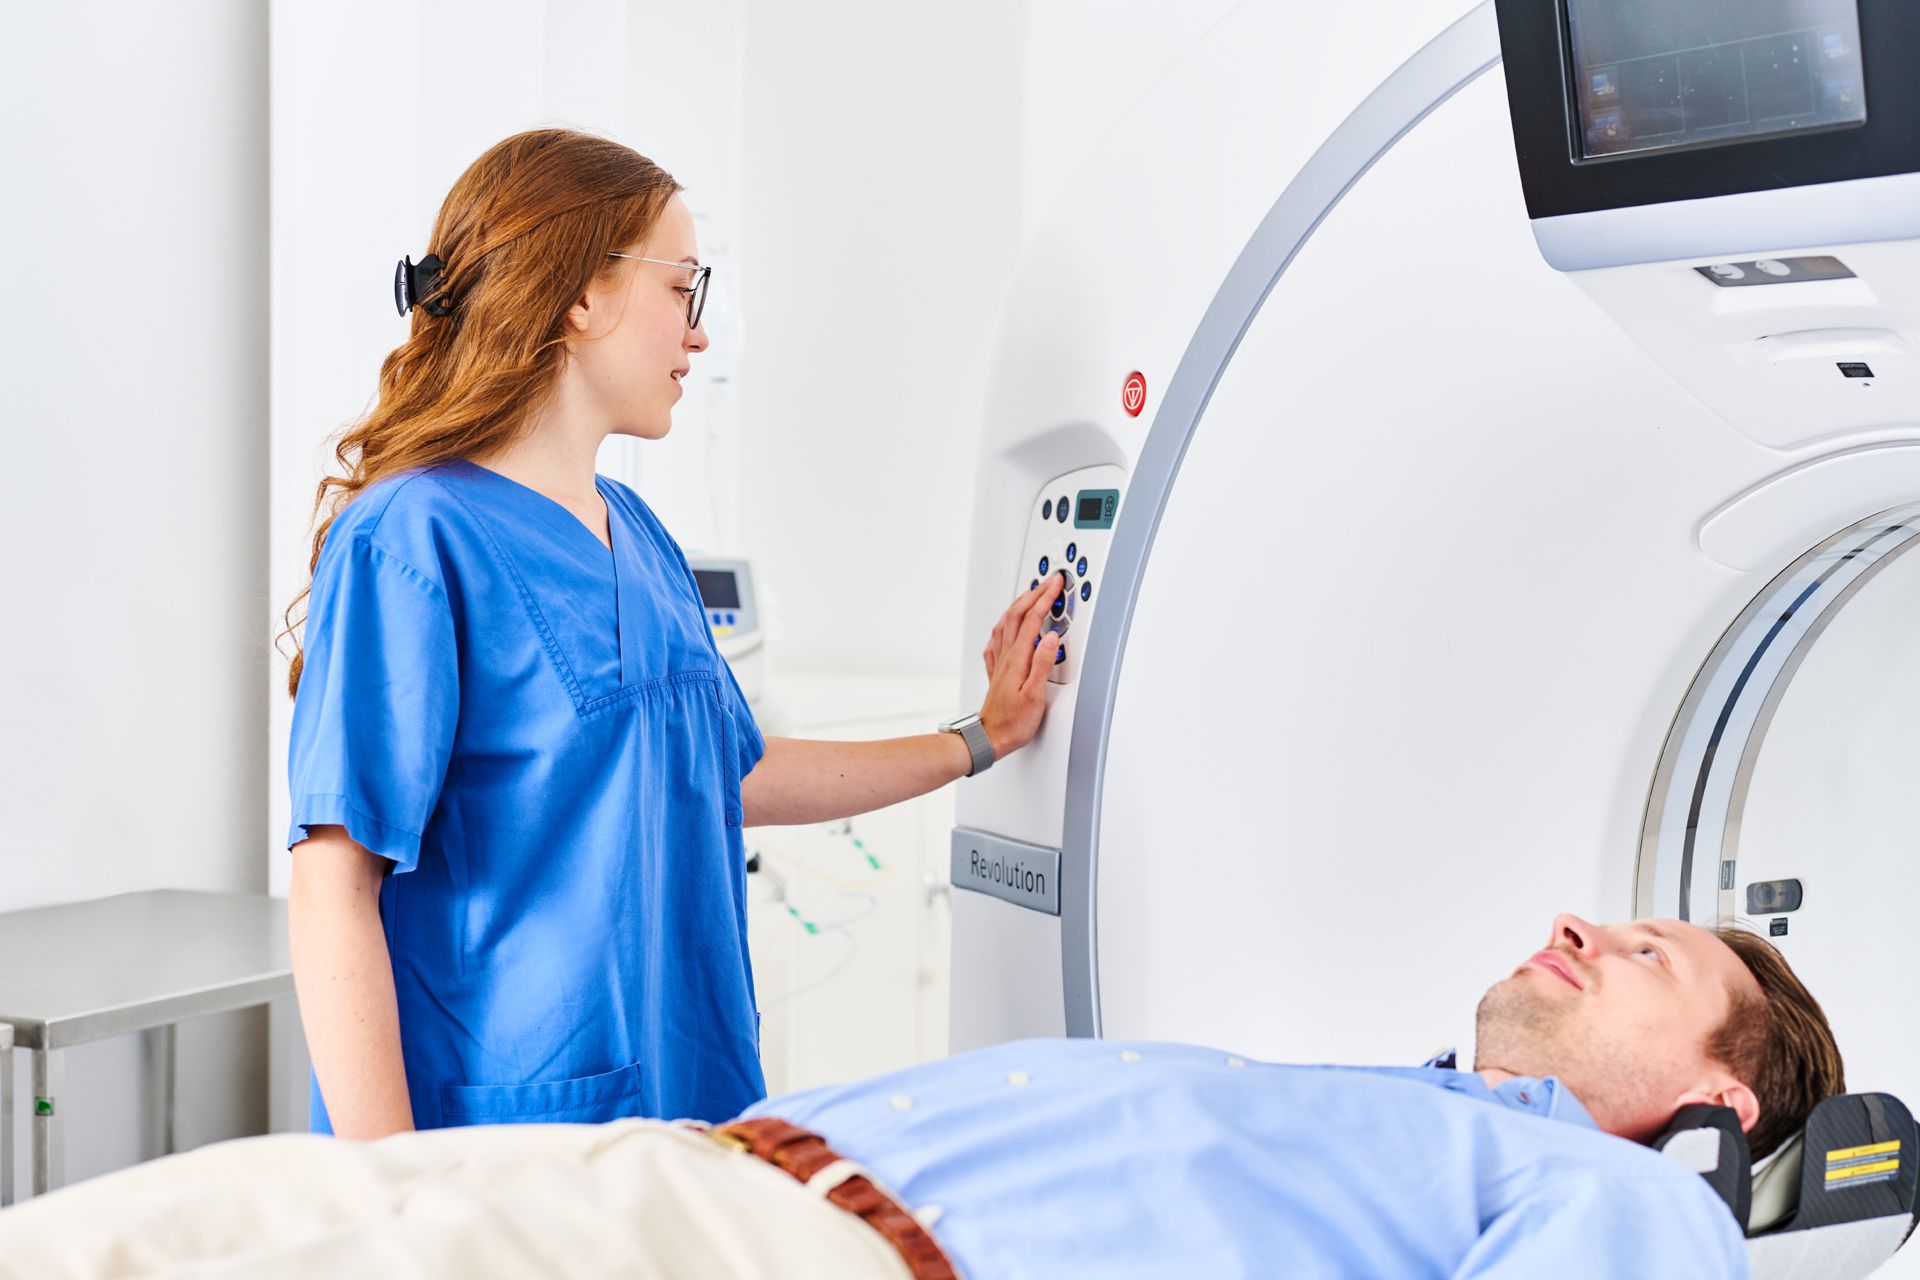 Patient liegt in einem CT und wird von Medizinischer Fachkraft betreut.